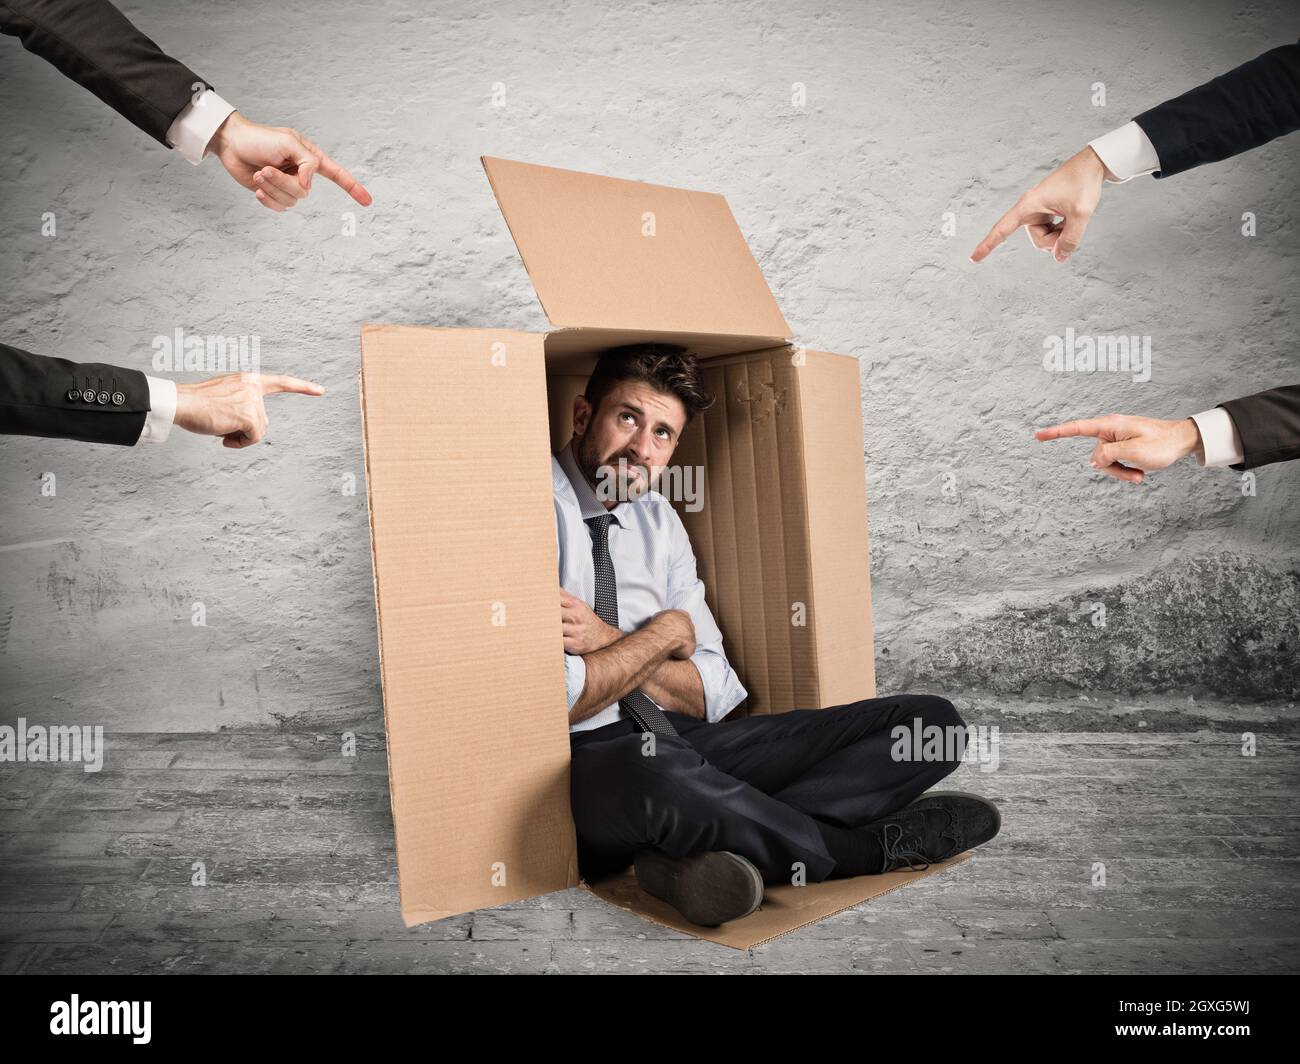 Geschäftsmann von Kollegen angezeigt, die sich in einem Karton versteckt haben Stockfoto